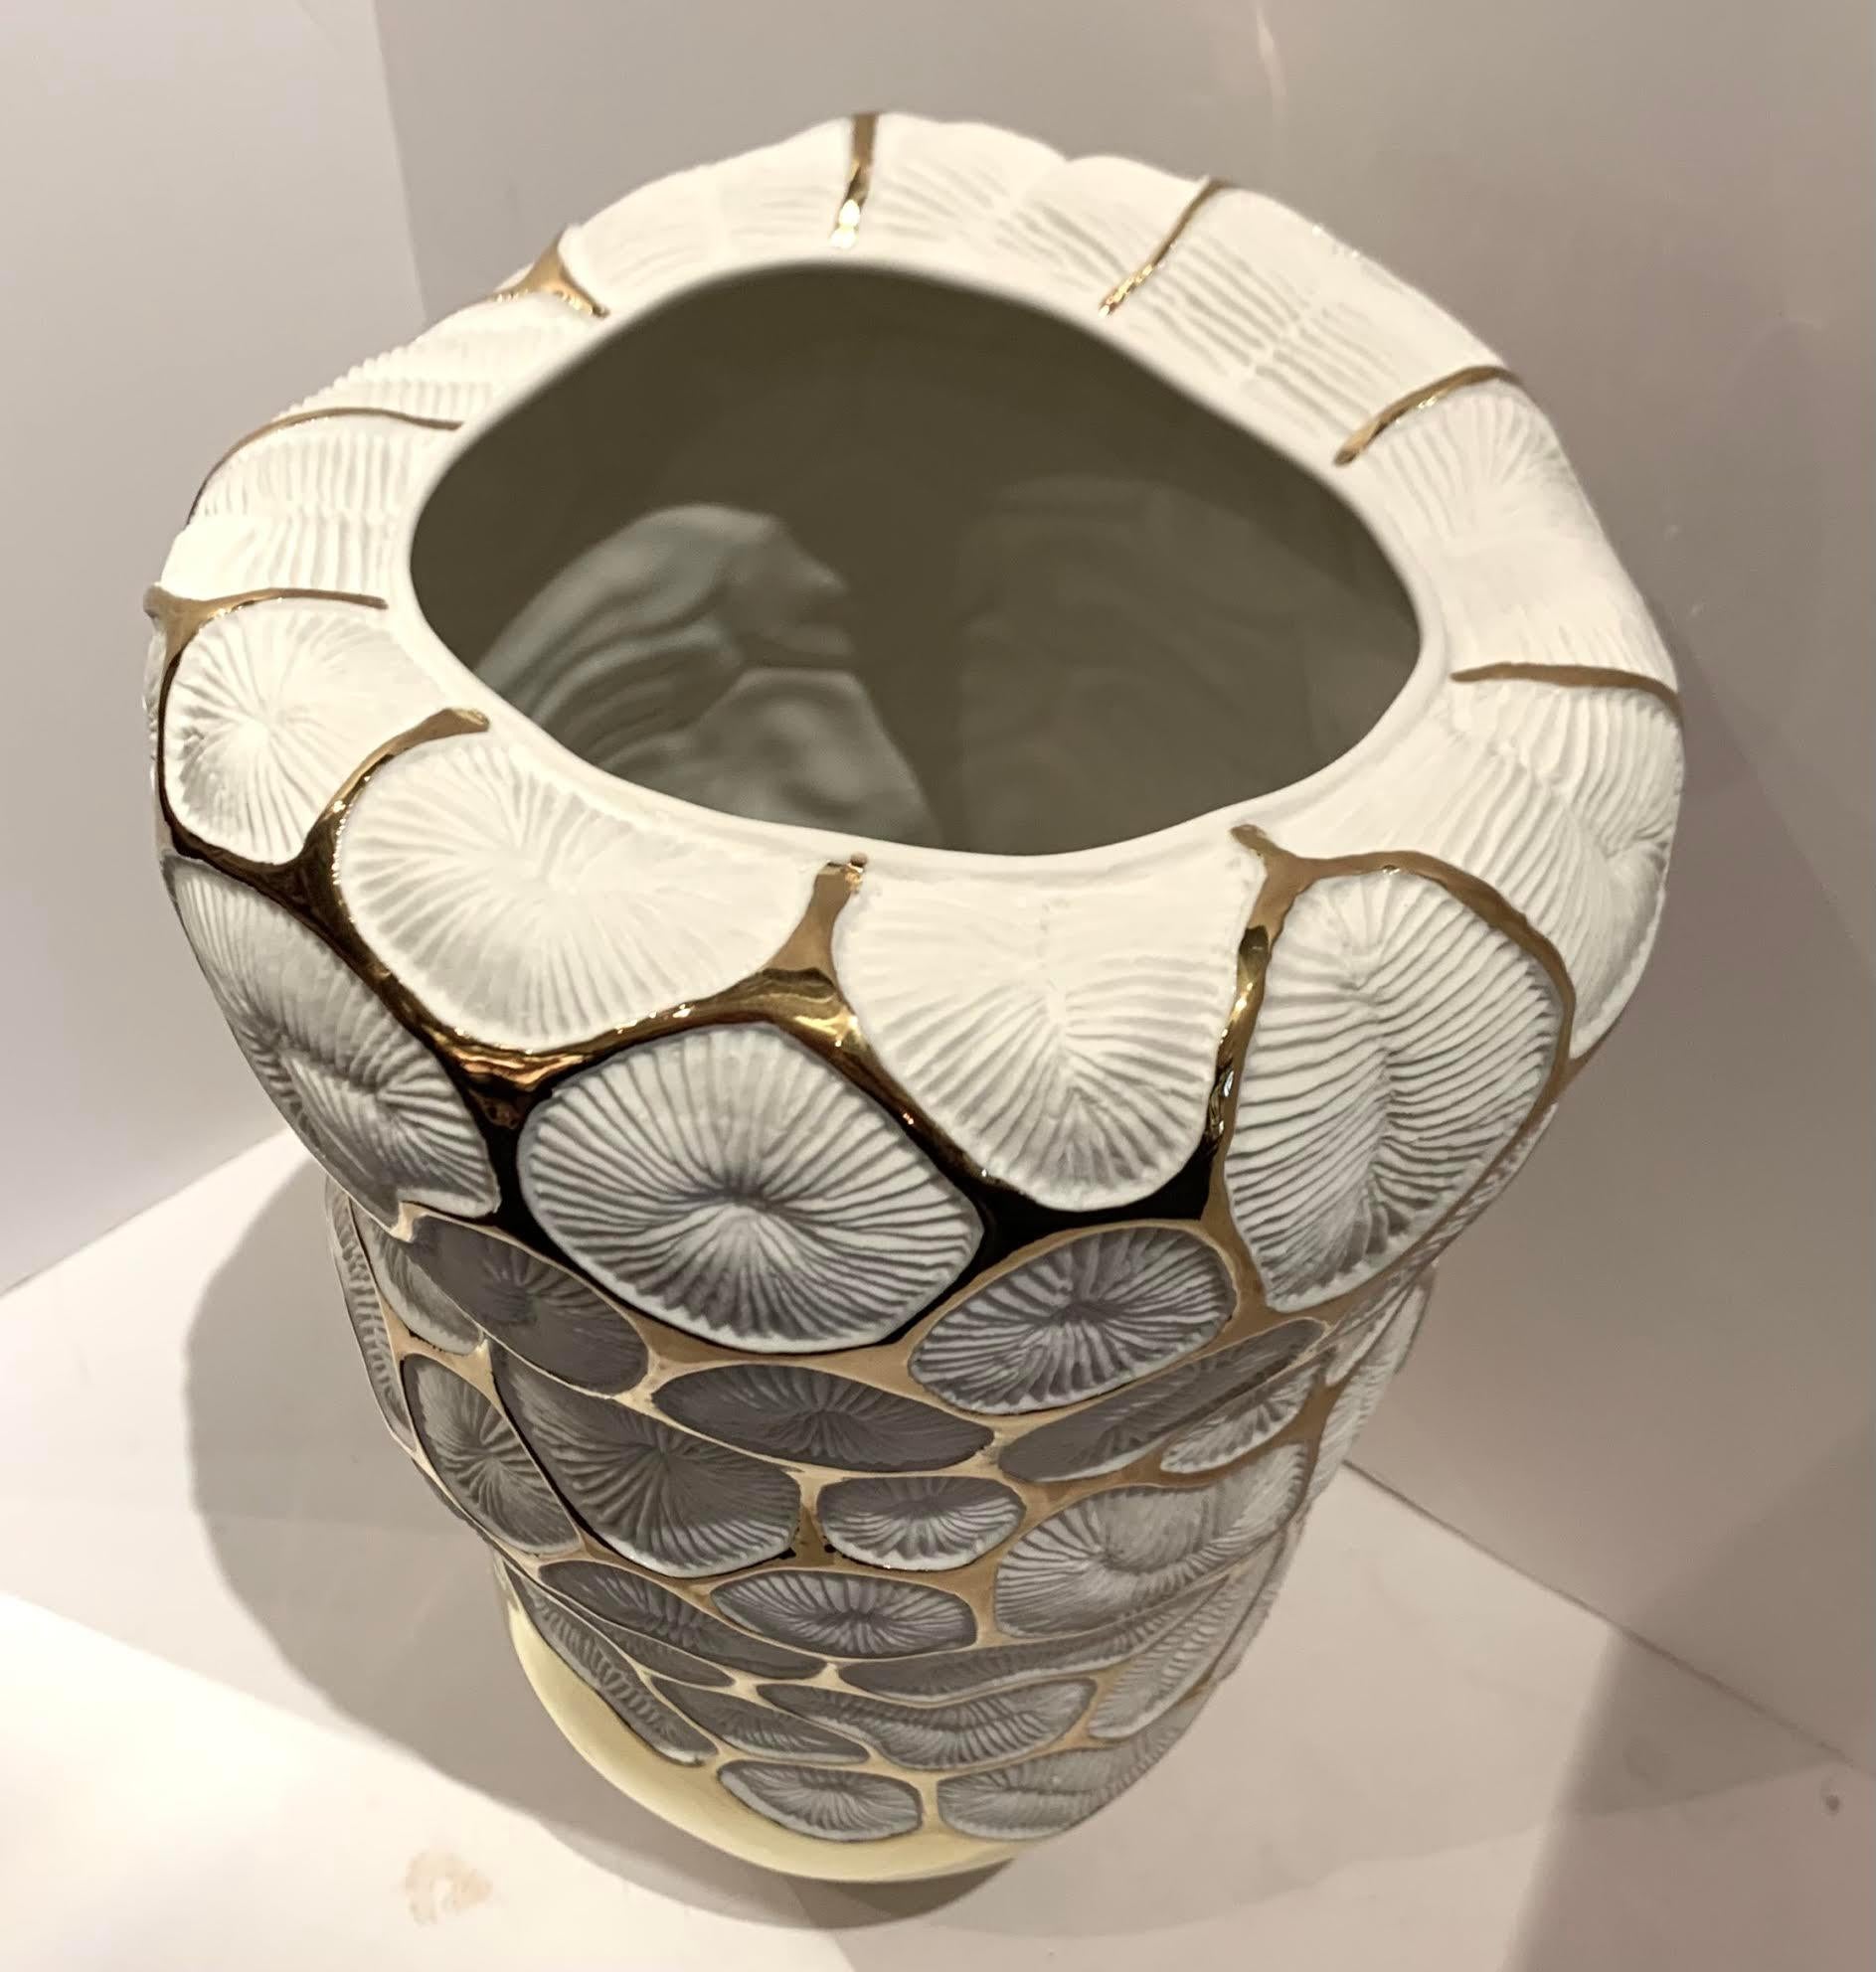 Zeitgenössische hohe Vase aus weißem italienischem Porzellan mit 22-karätigen Goldakzenten.
Dekoratives Korallenmotiv.